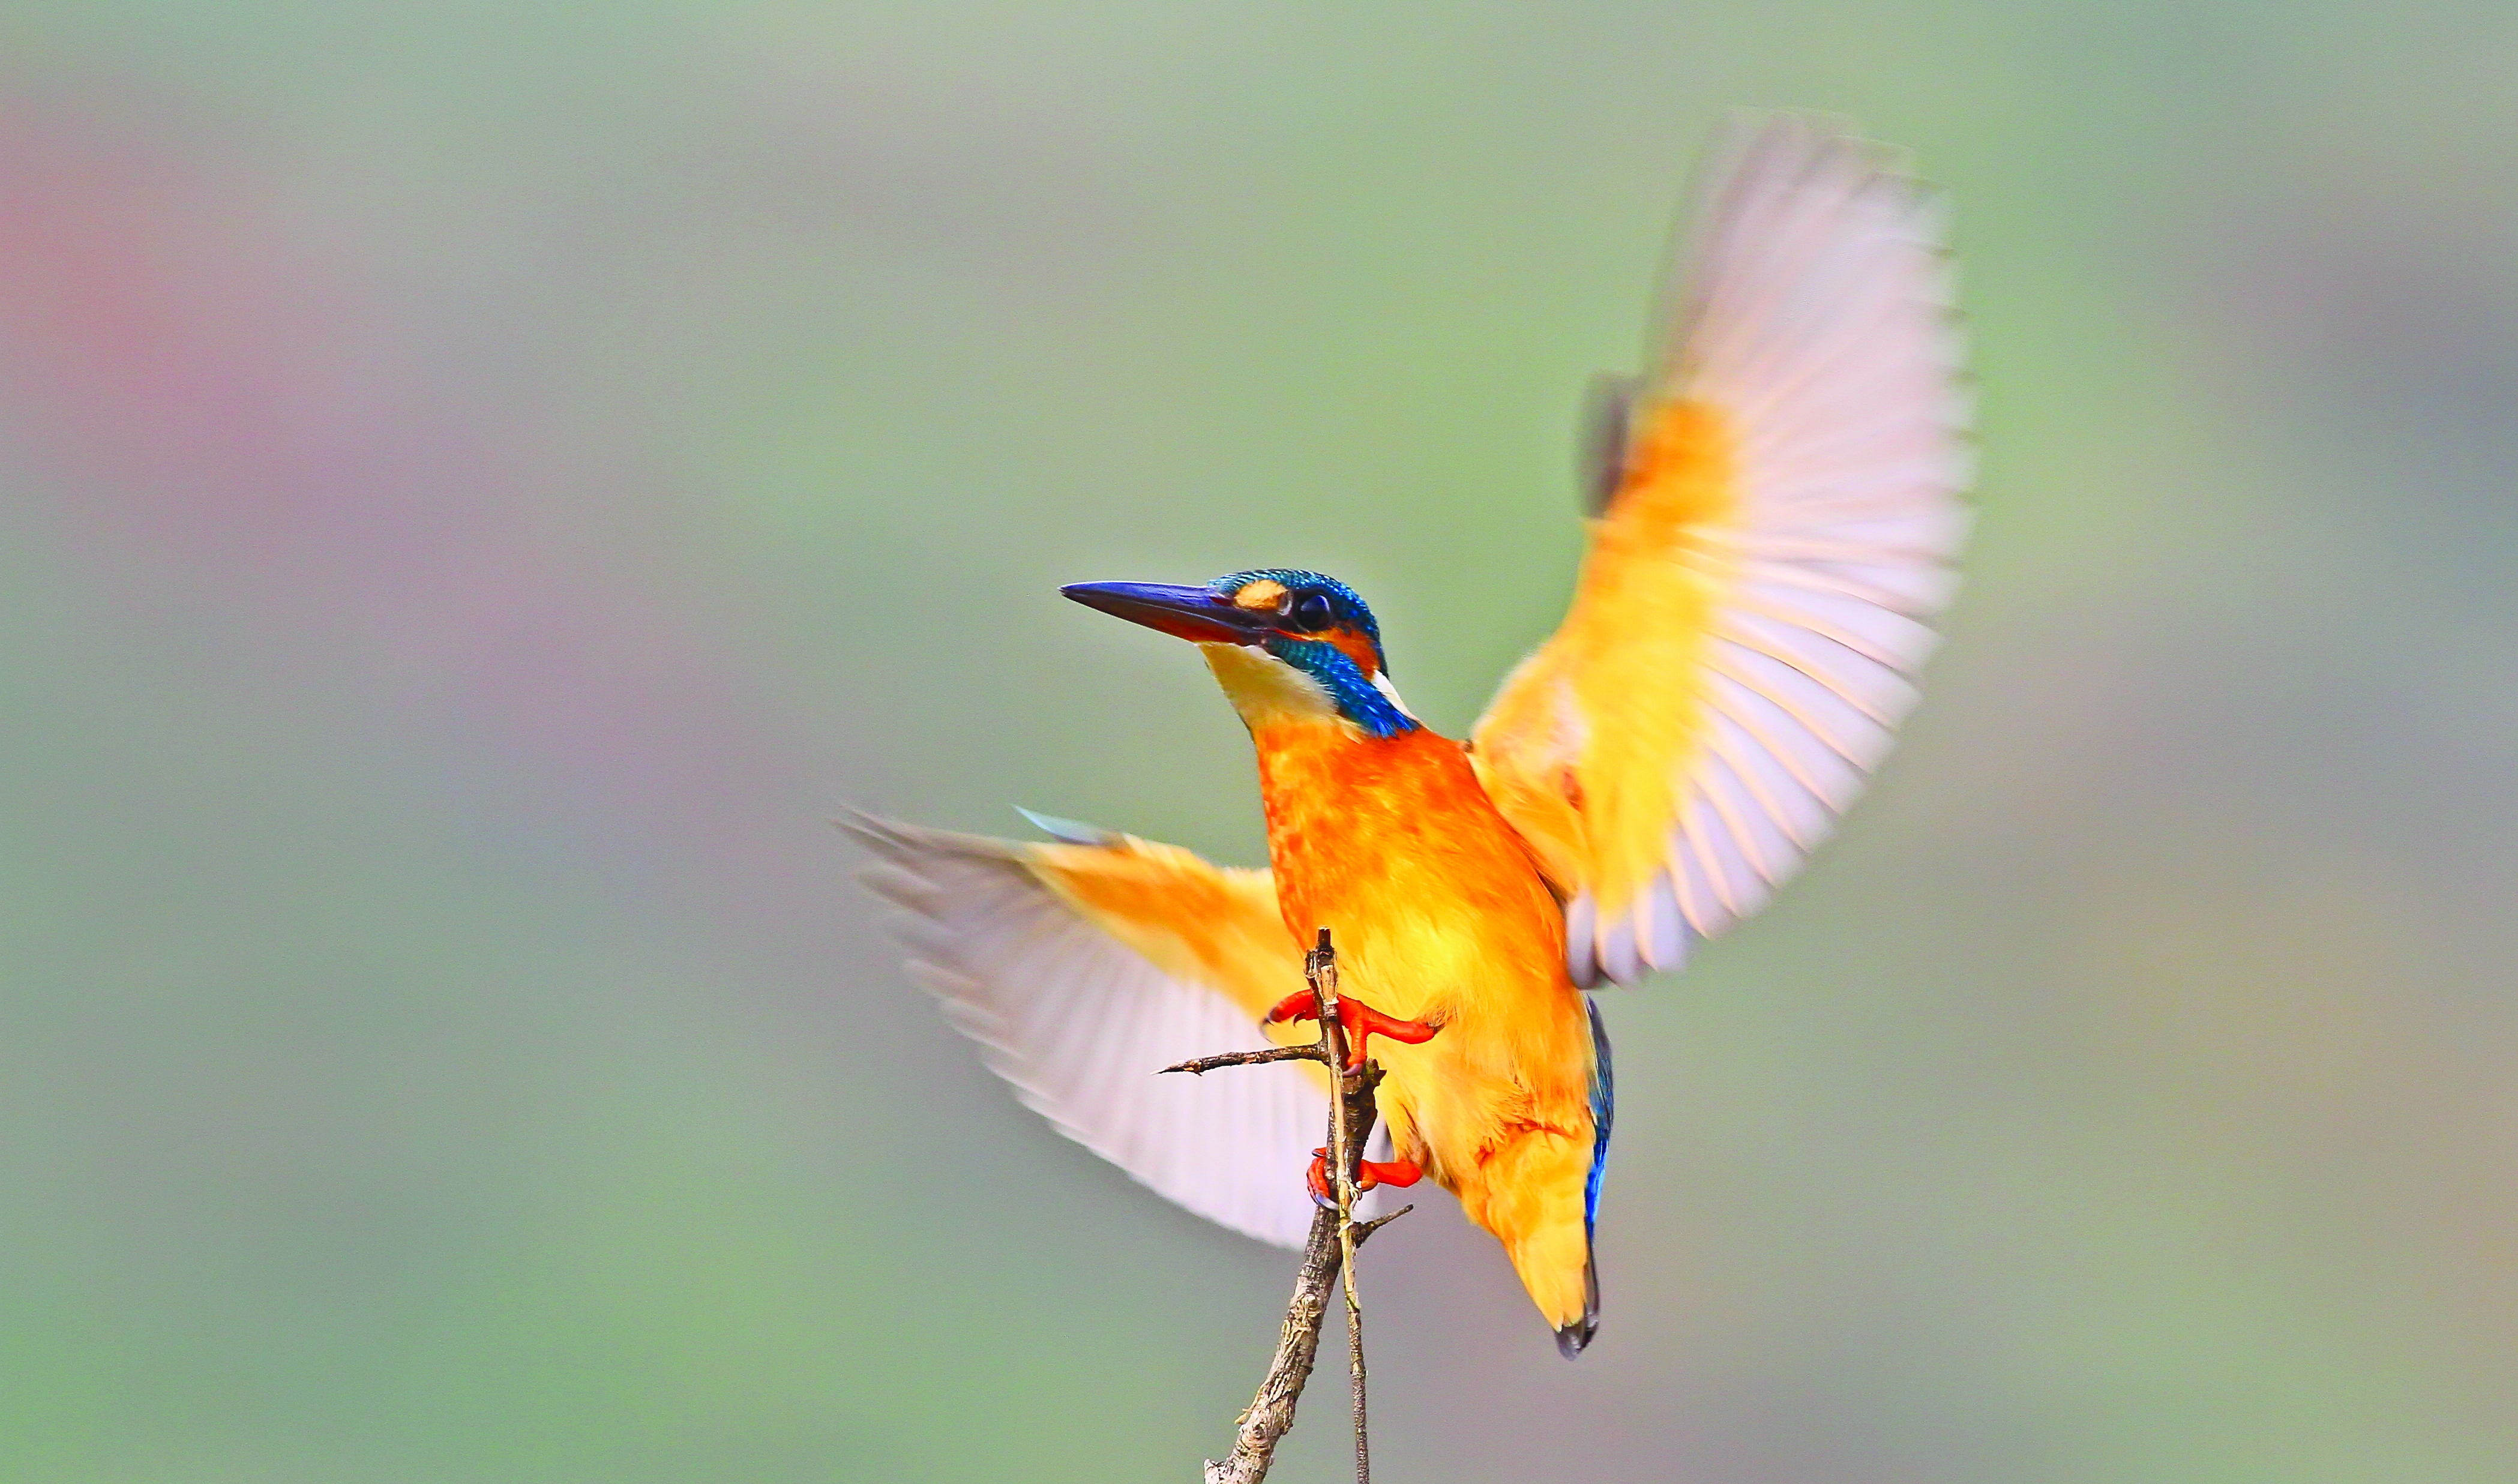 184 kuş türüne ev sahipliği yapan Dünya Mirası bir bahçe: HEVSEL